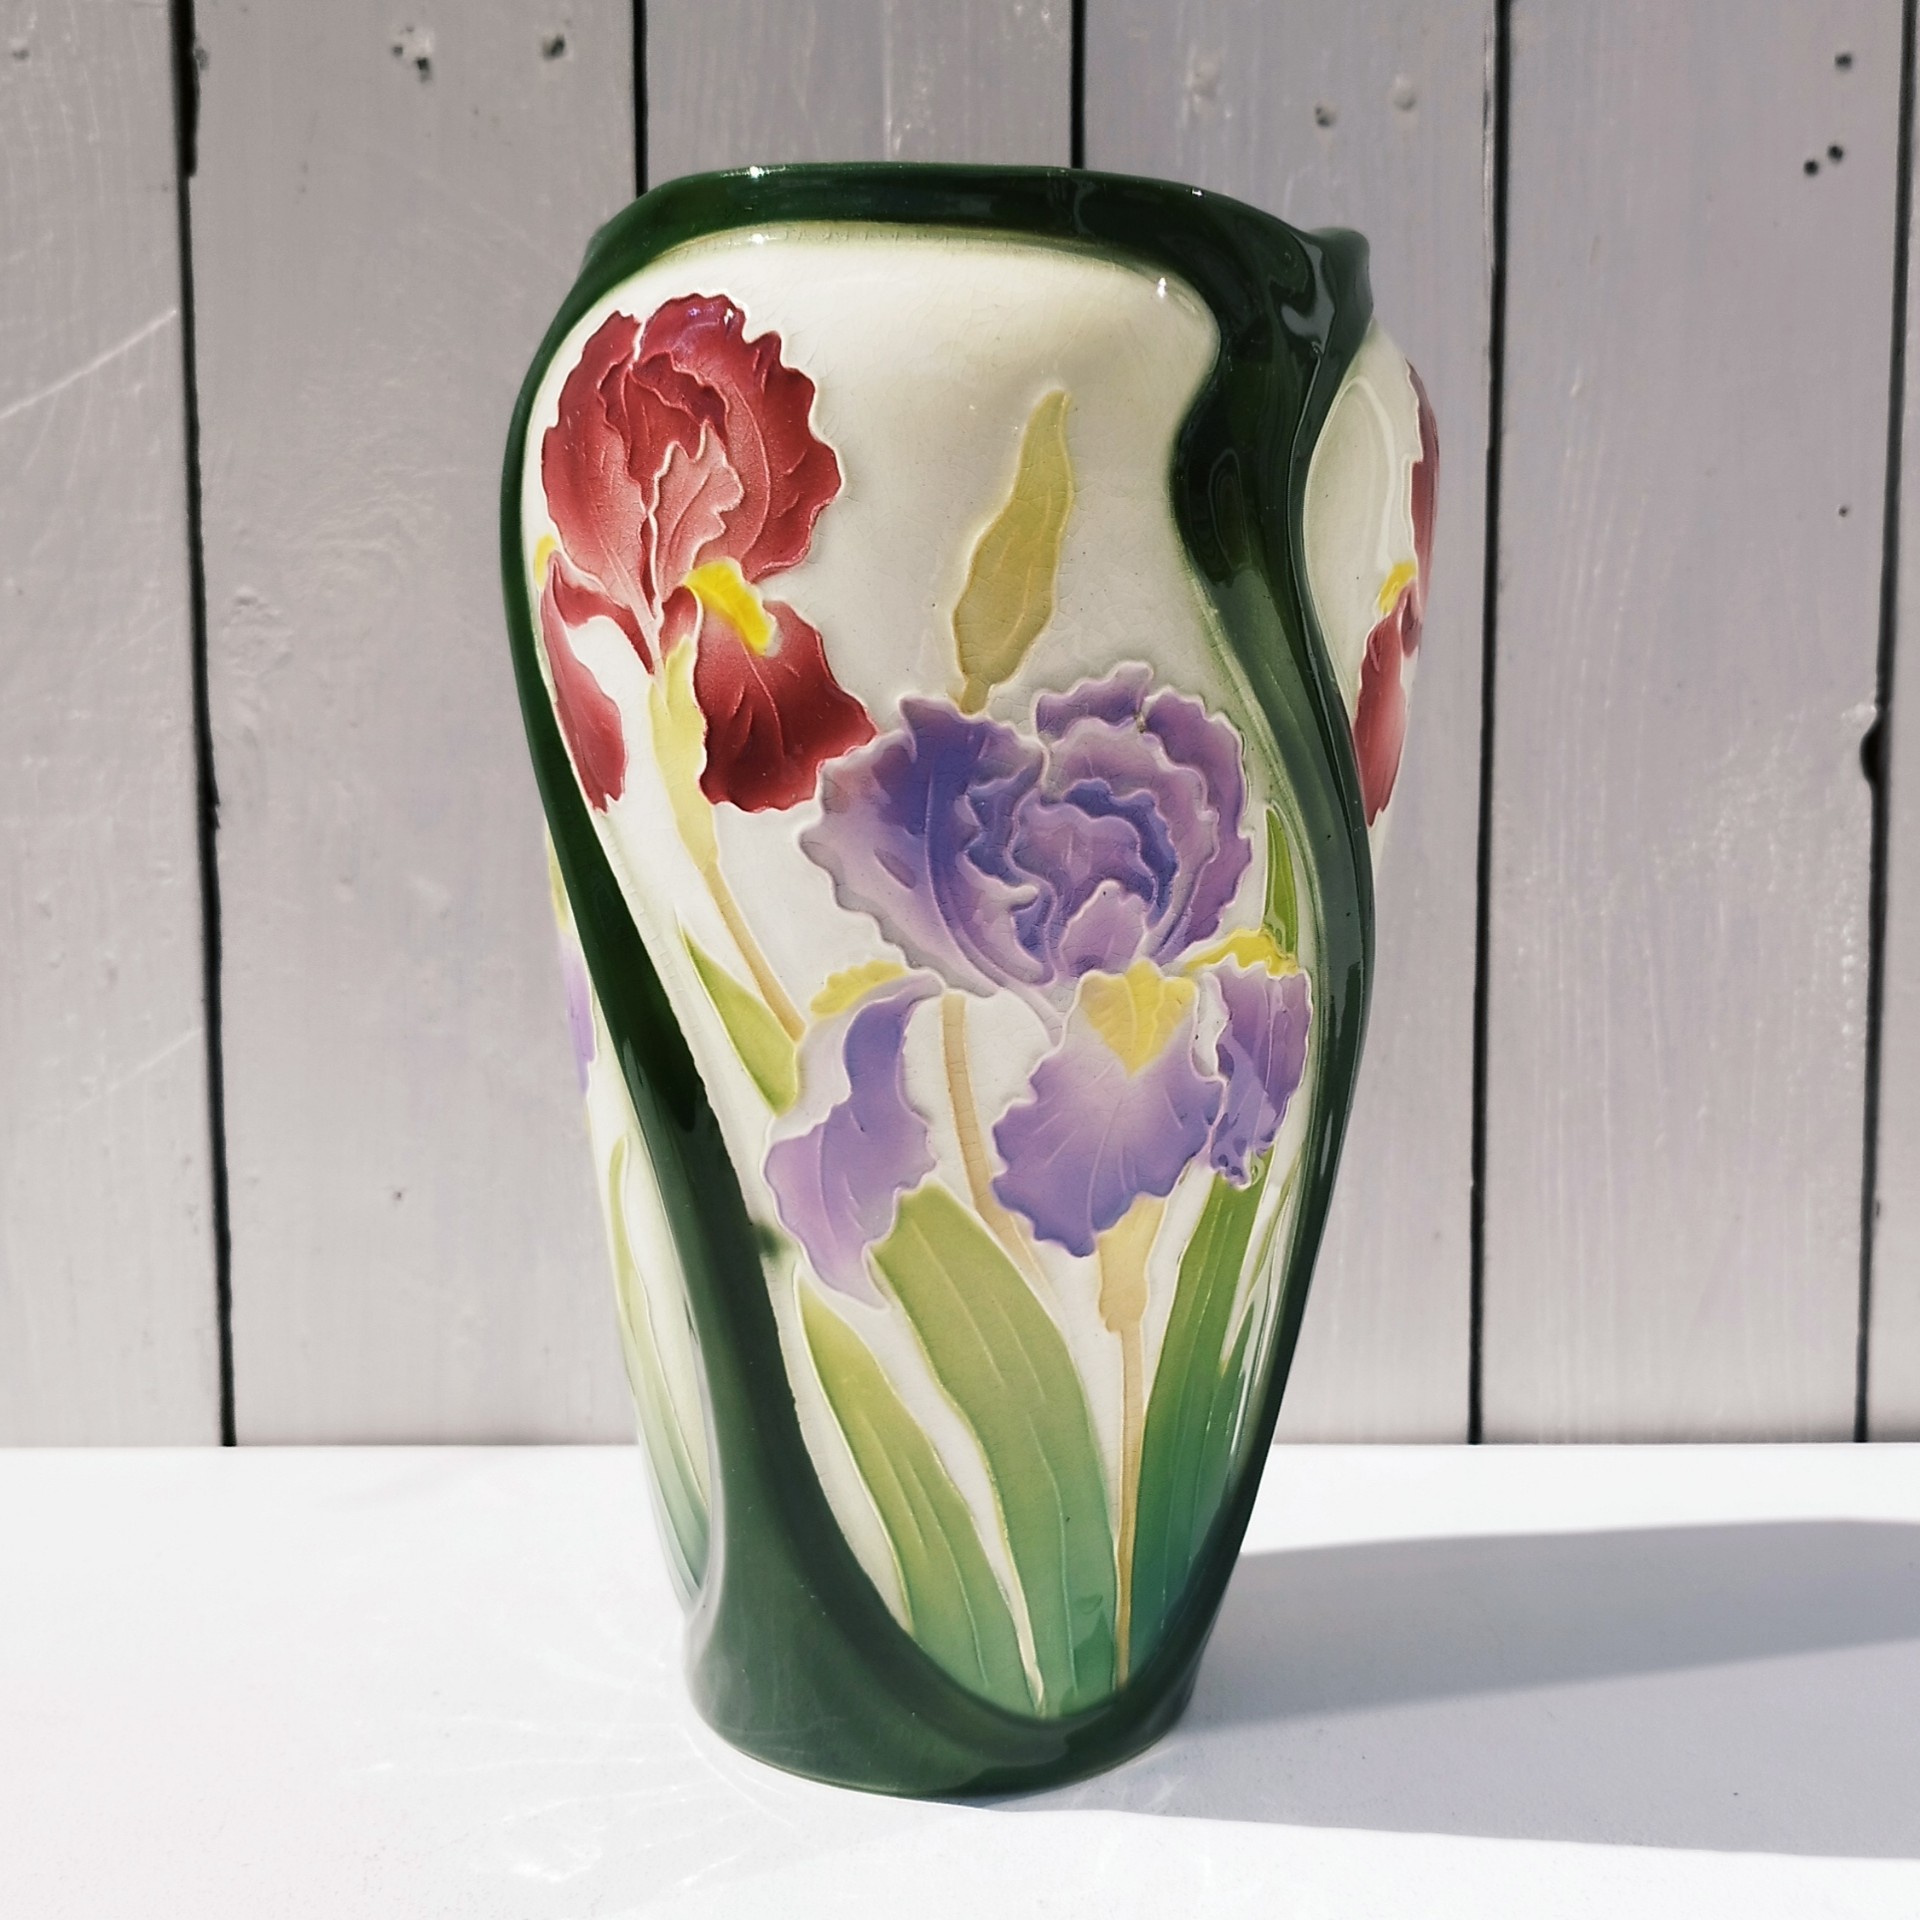 Vase en faïence de Saint clément à décor d'Iris rouges et Violets par Keller et Guérin. Signé sous le vase. Excellent état. Hauteur : 25,5 cm Diamètre col: 13 cm